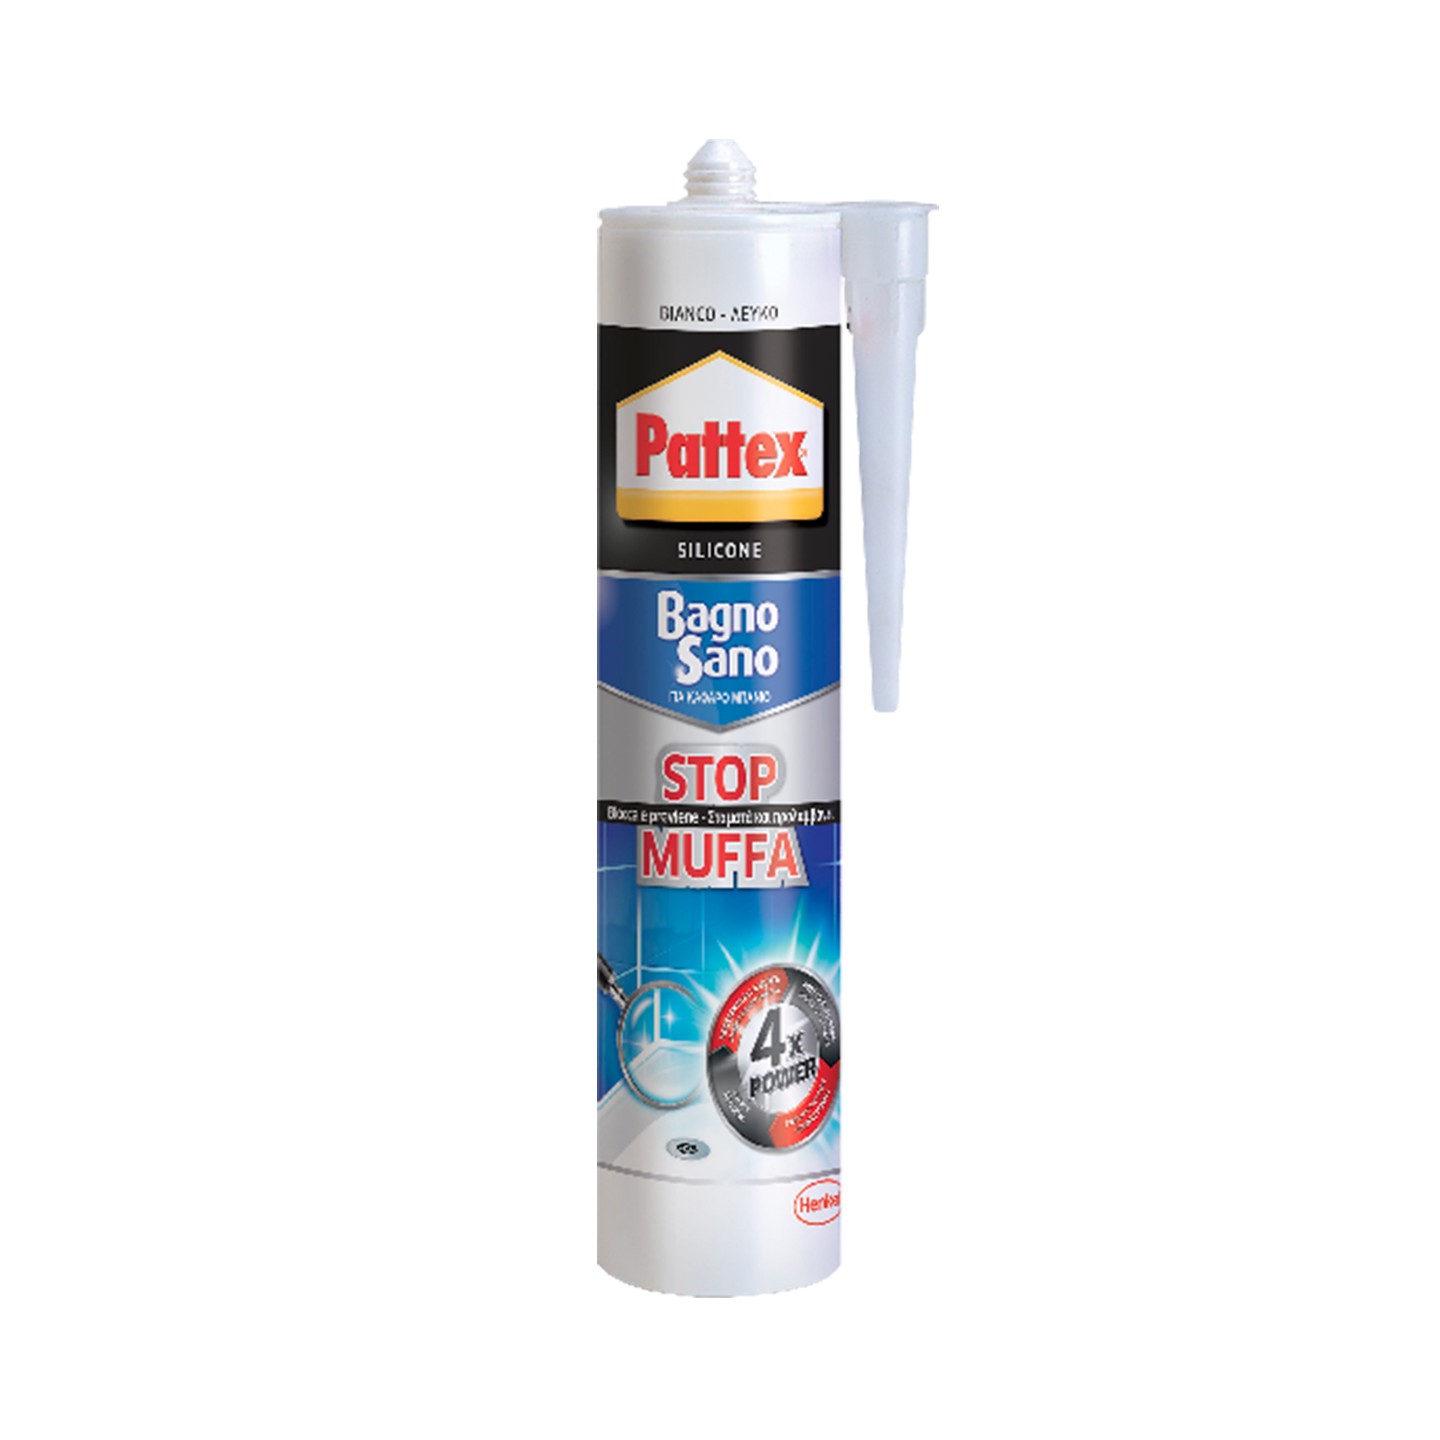 Pattex Bagno Sano Stop Muffa, Sigillante Bianco Per Prevenire La Muffa,  Silicone Resistente All'Acqua, Silicone Antimuffa In Cartuccia, 1 X 300 Ml  